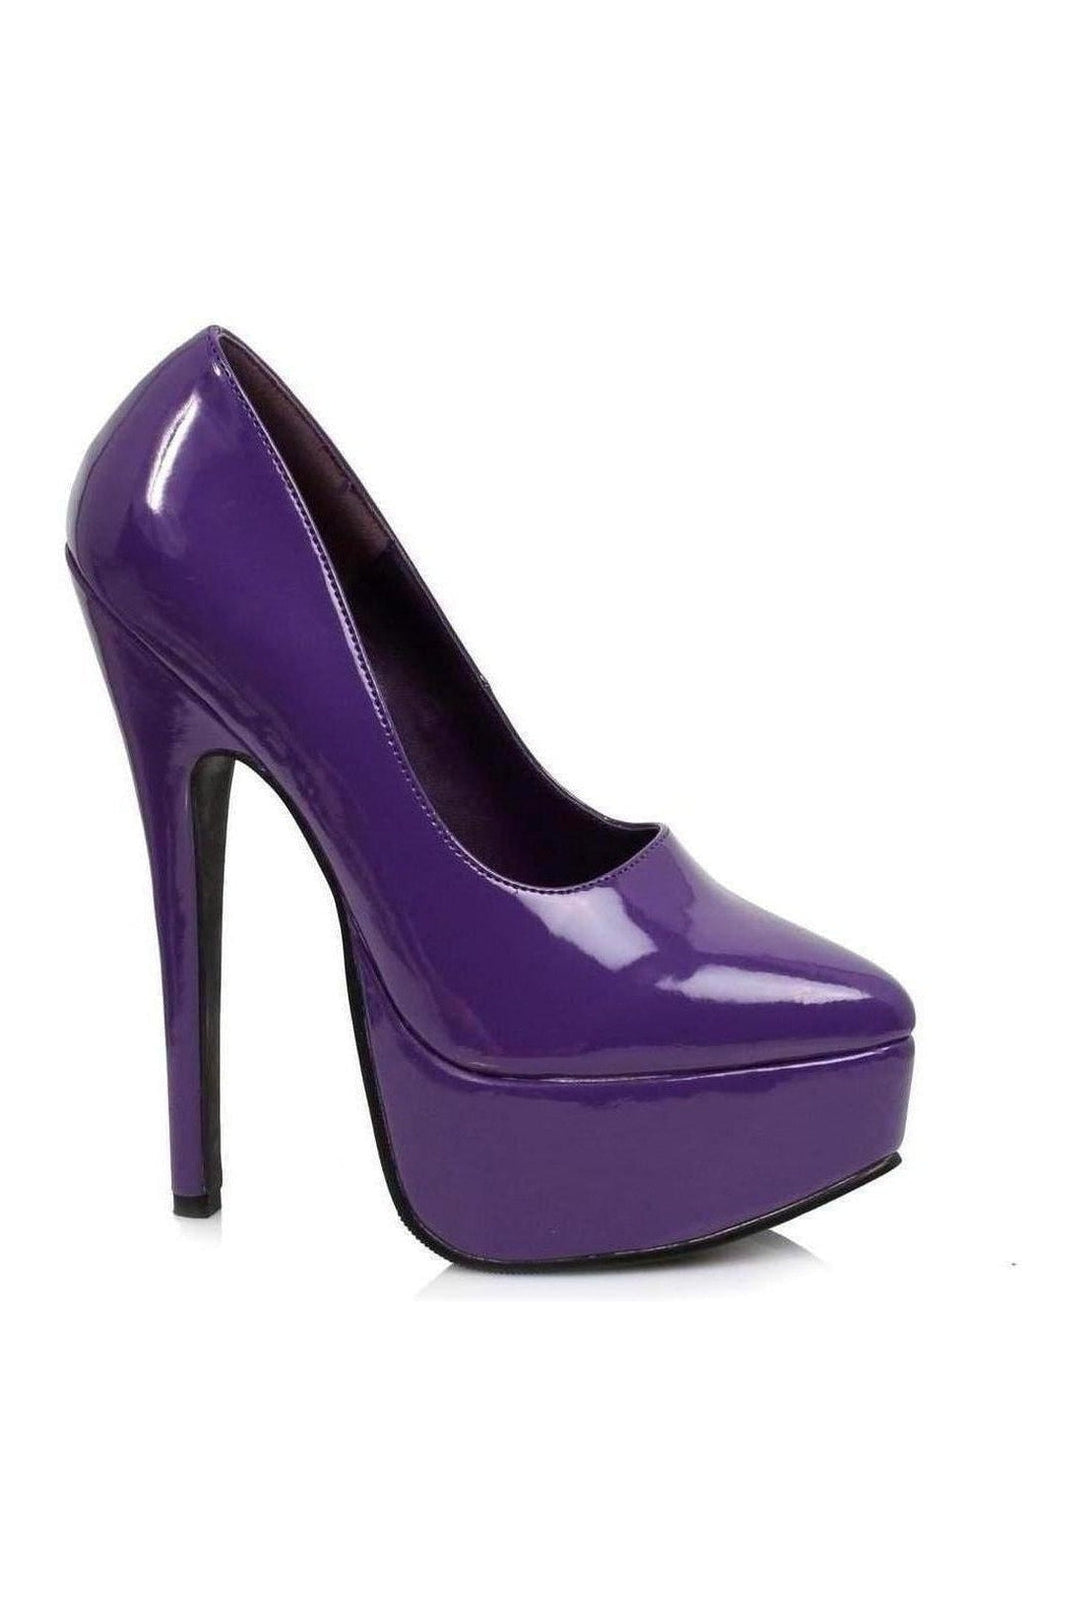 652-PRINCE Platform Pump | Purple Patent-Pumps- Stripper Shoes at SEXYSHOES.COM